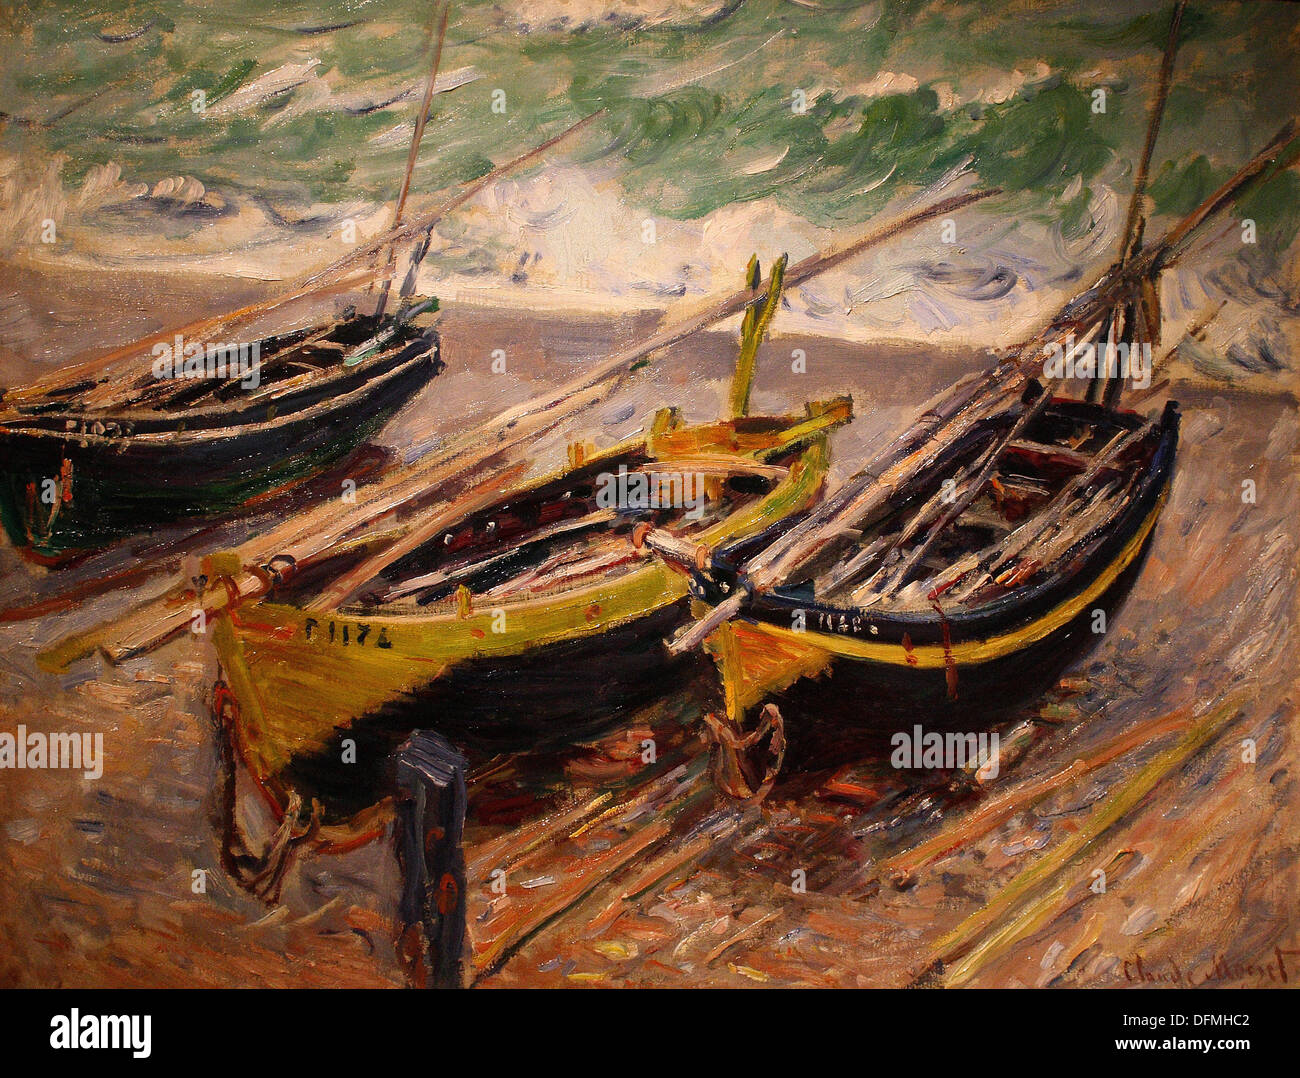 Claude MONET - trois bateaux de pêche - 1886 - Musée des beaux-arts - Budapest, Hongrie Banque D'Images